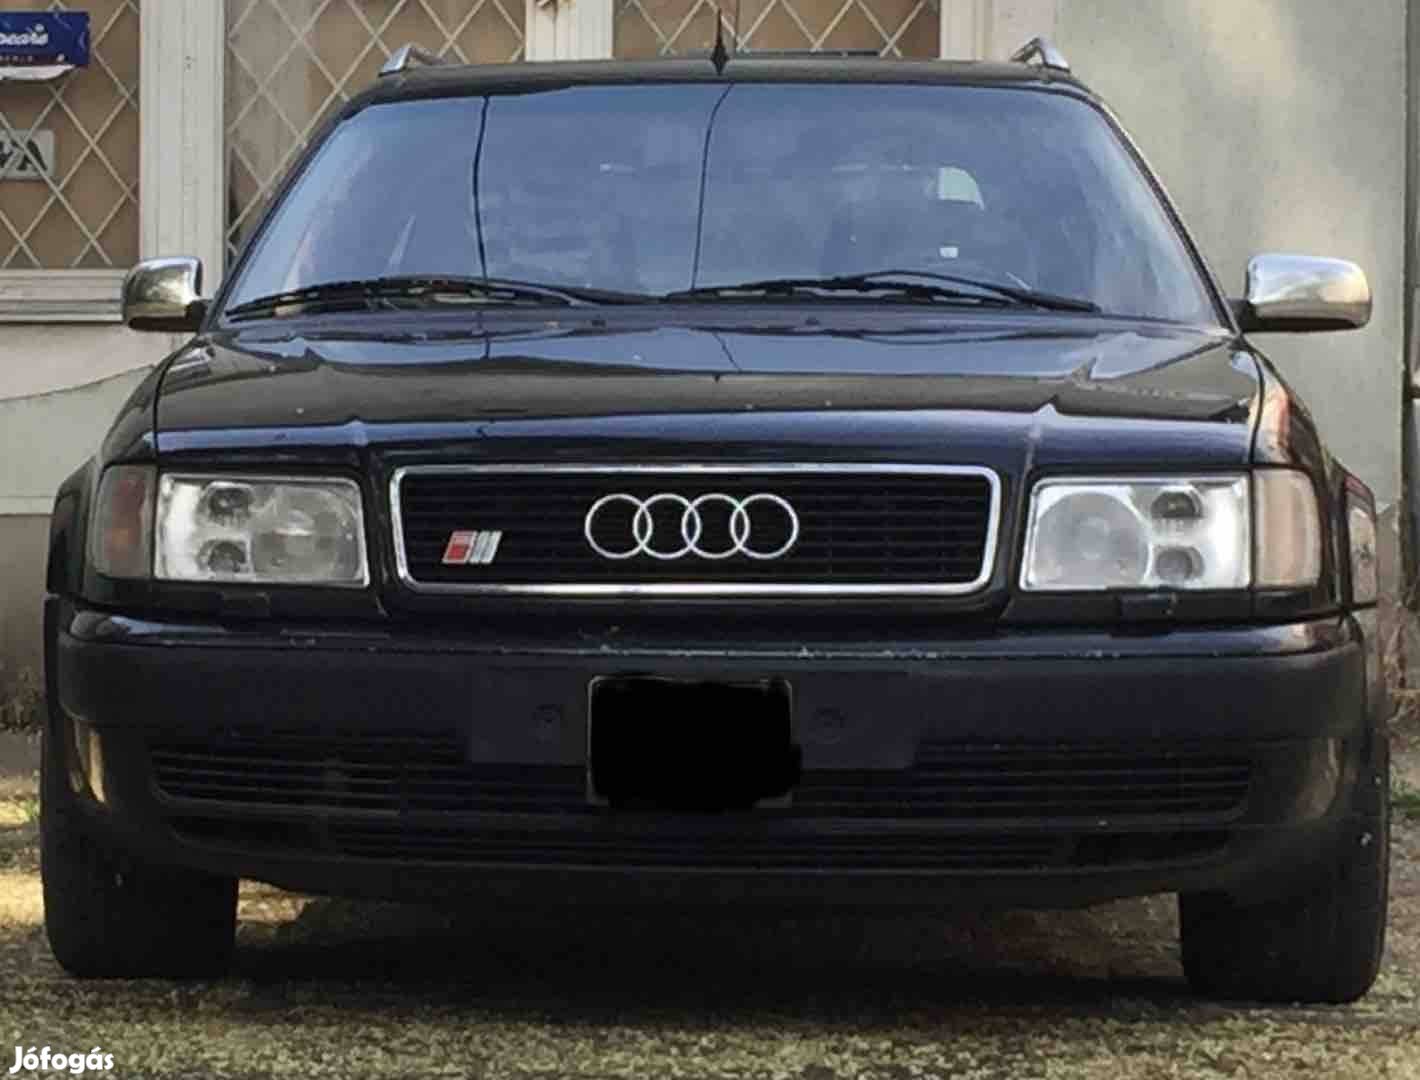 Audi S4, S6, A8